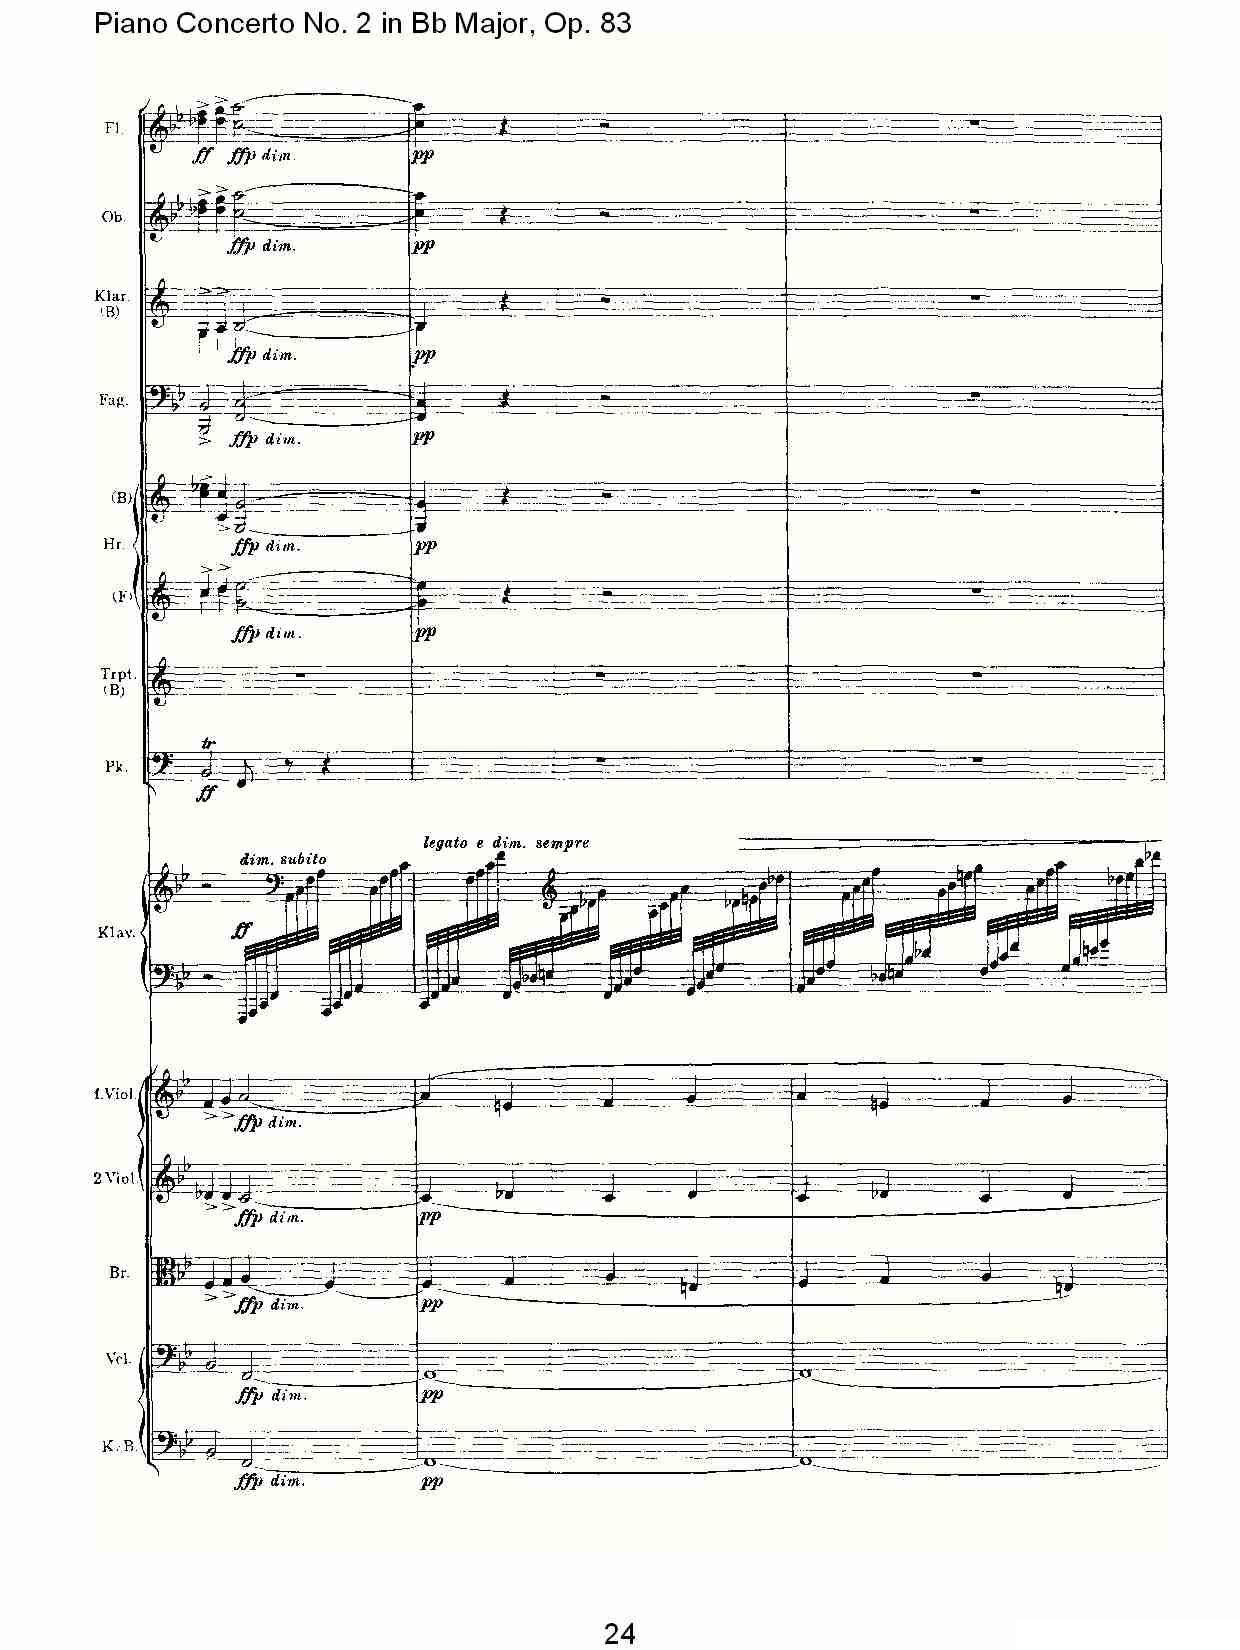 Bb大调钢琴第二协奏曲, Op.83第一乐章（一）钢琴曲谱（图25）